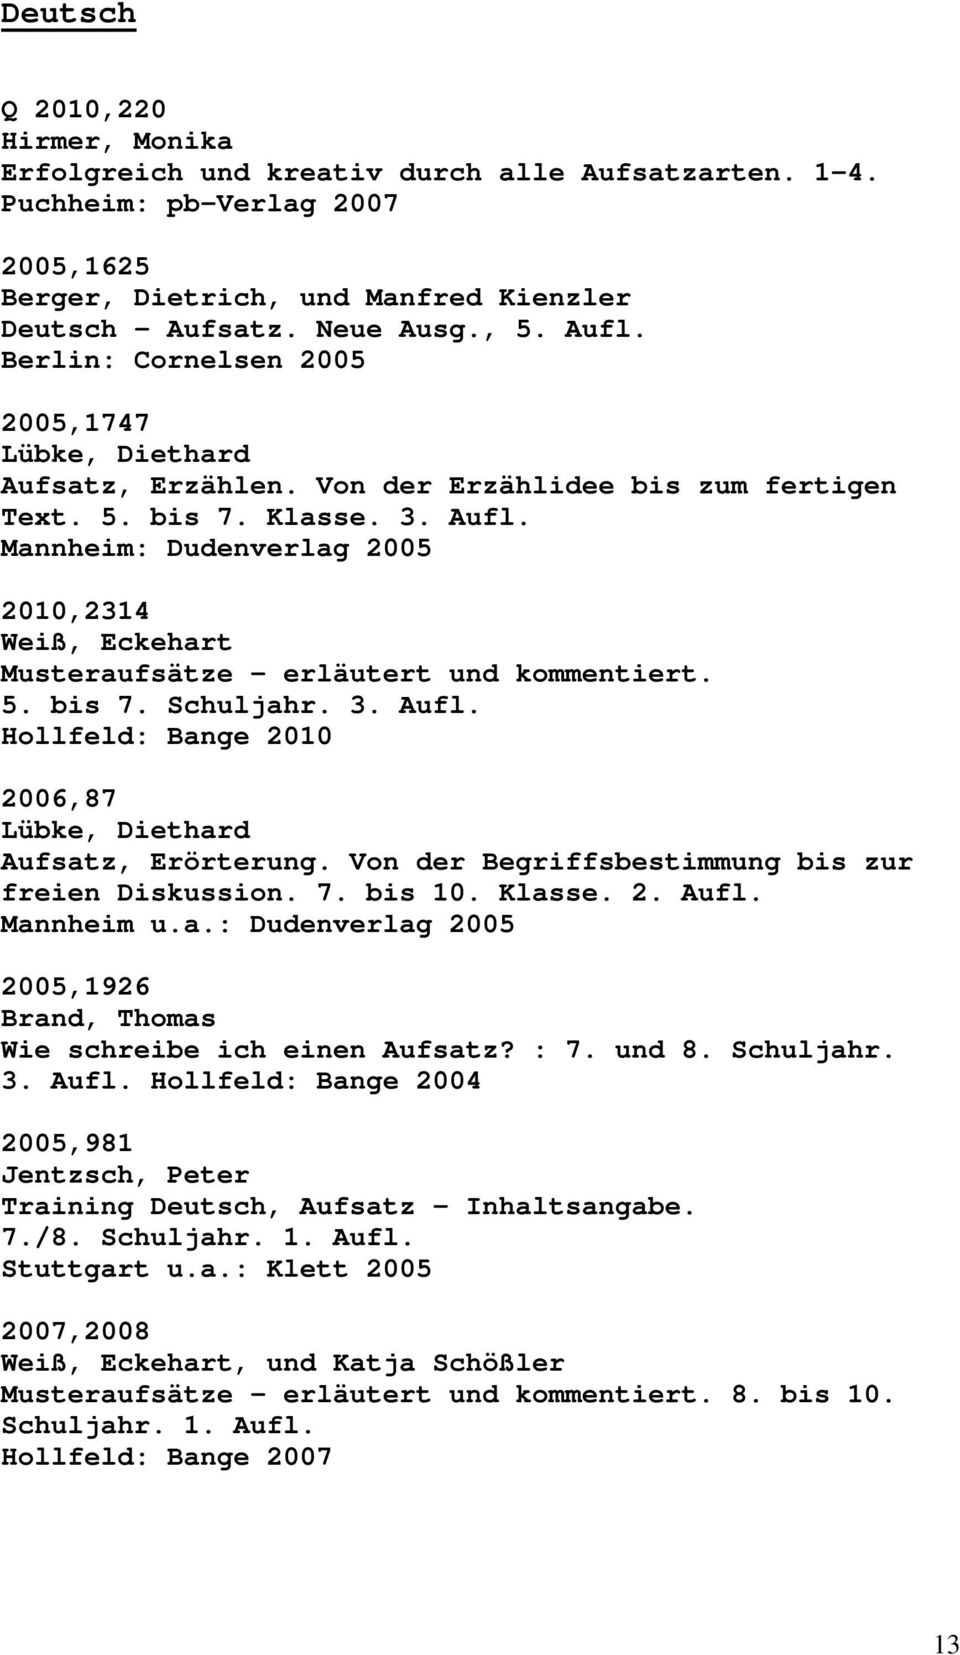 Mannheim: Dudenverlag 2005 2010,2314 Weiß, Eckehart Musteraufsätze erläutert und kommentiert. 5. bis 7. Schuljahr. 3. Aufl. Hollfeld: Bange 2010 2006,87 Lübke, Diethard Aufsatz, Erörterung.